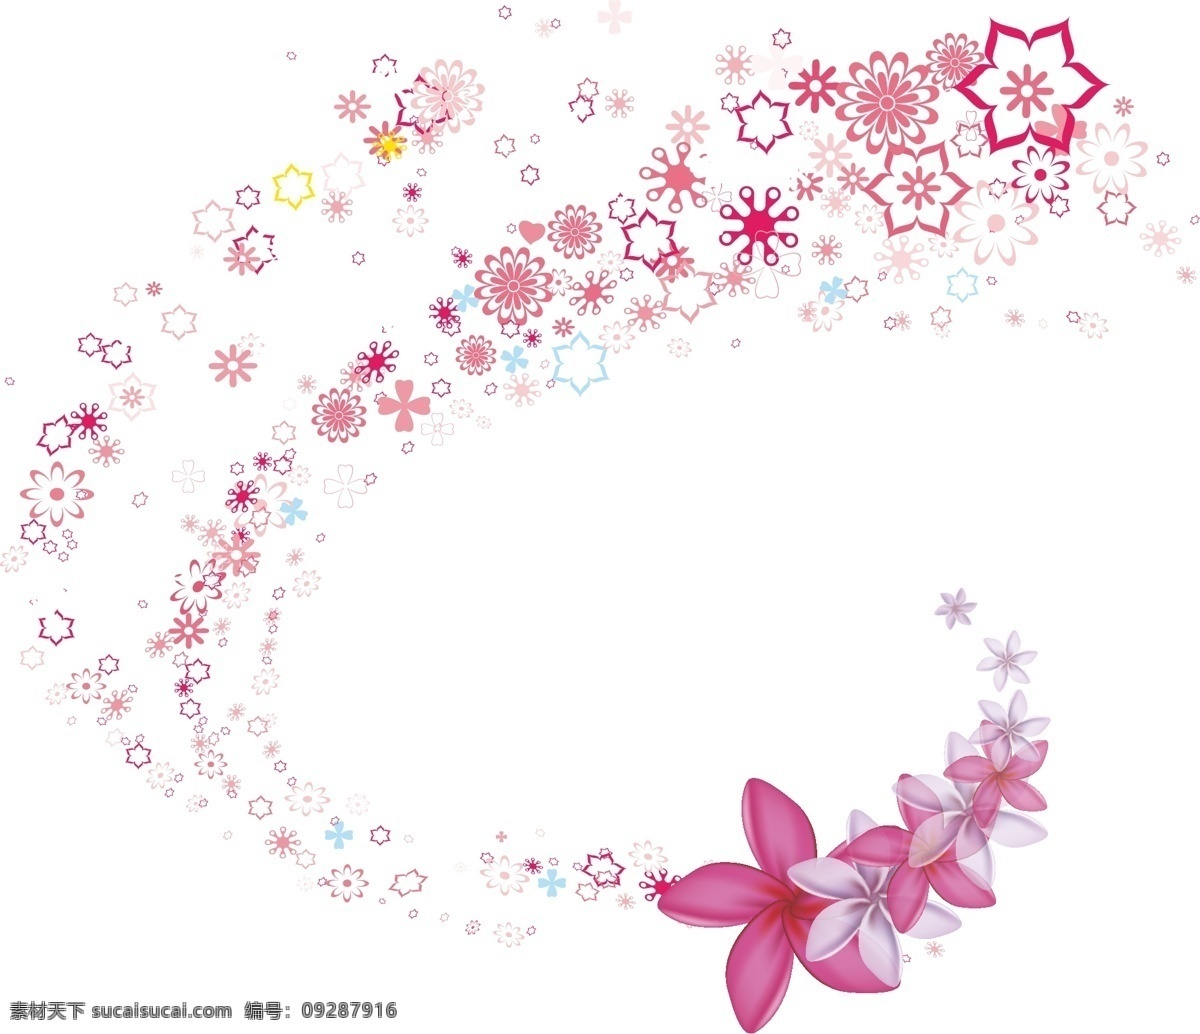 装饰 花朵 效果 元素 矢量设计 矢量文件 主题边框 背景设计 手绘设计 平面设计 花朵设计 粉色设计 背景